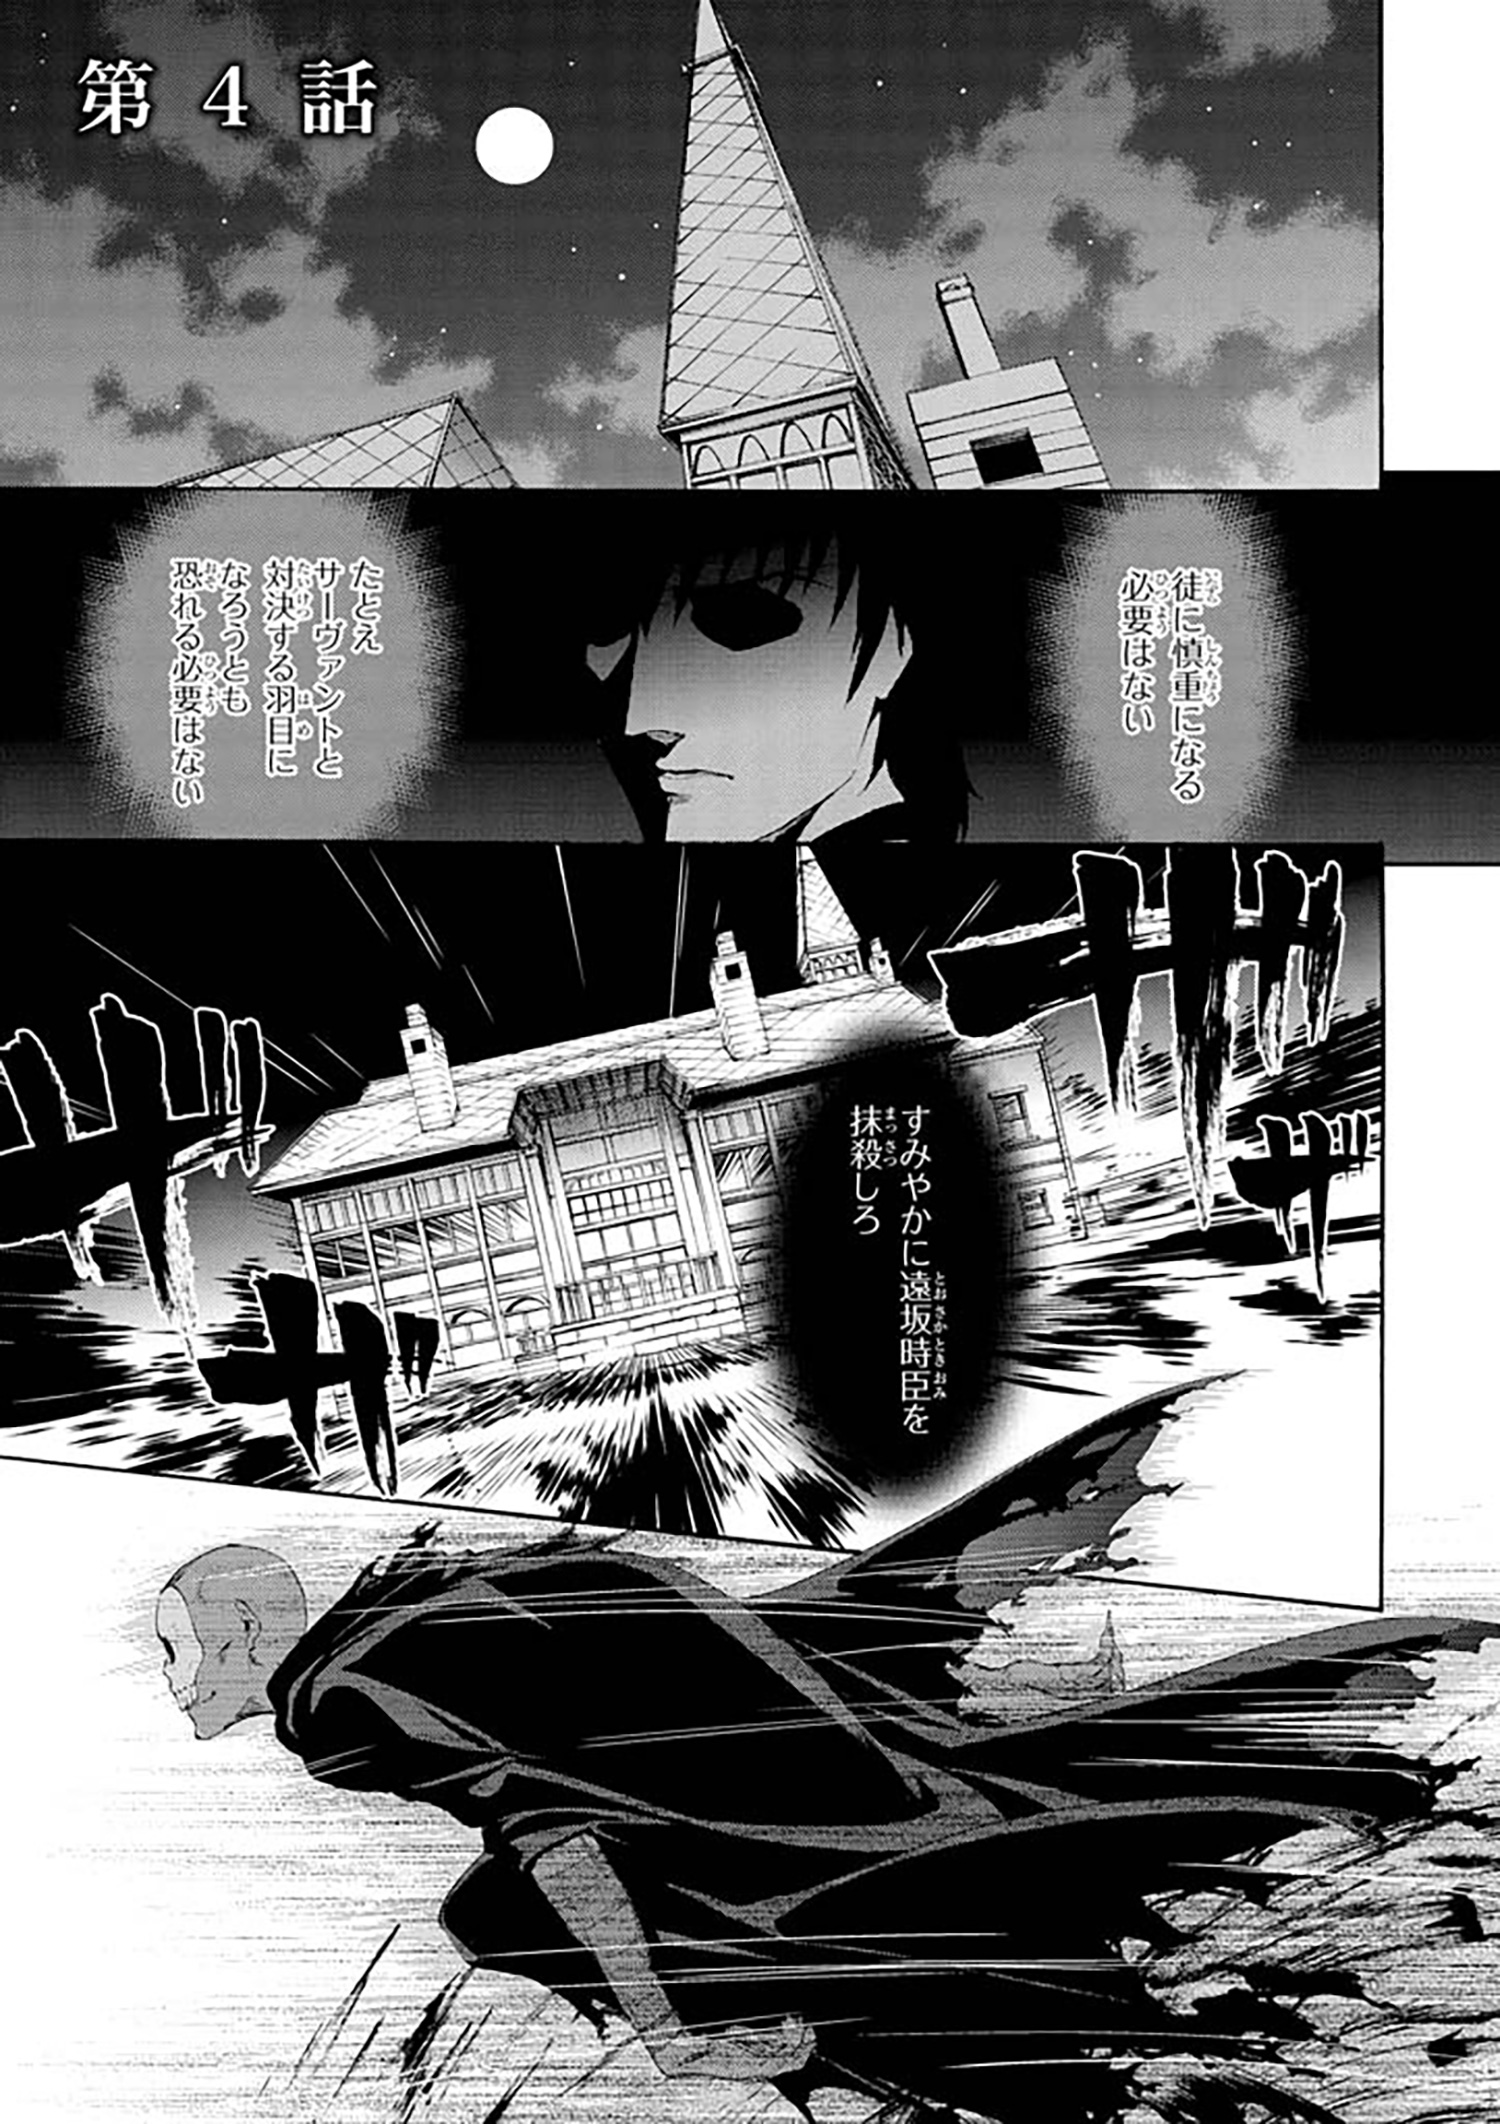 Fate Zero 第4話 1 Type Moonコミックエース 無料で漫画が読めるオンラインマガジン